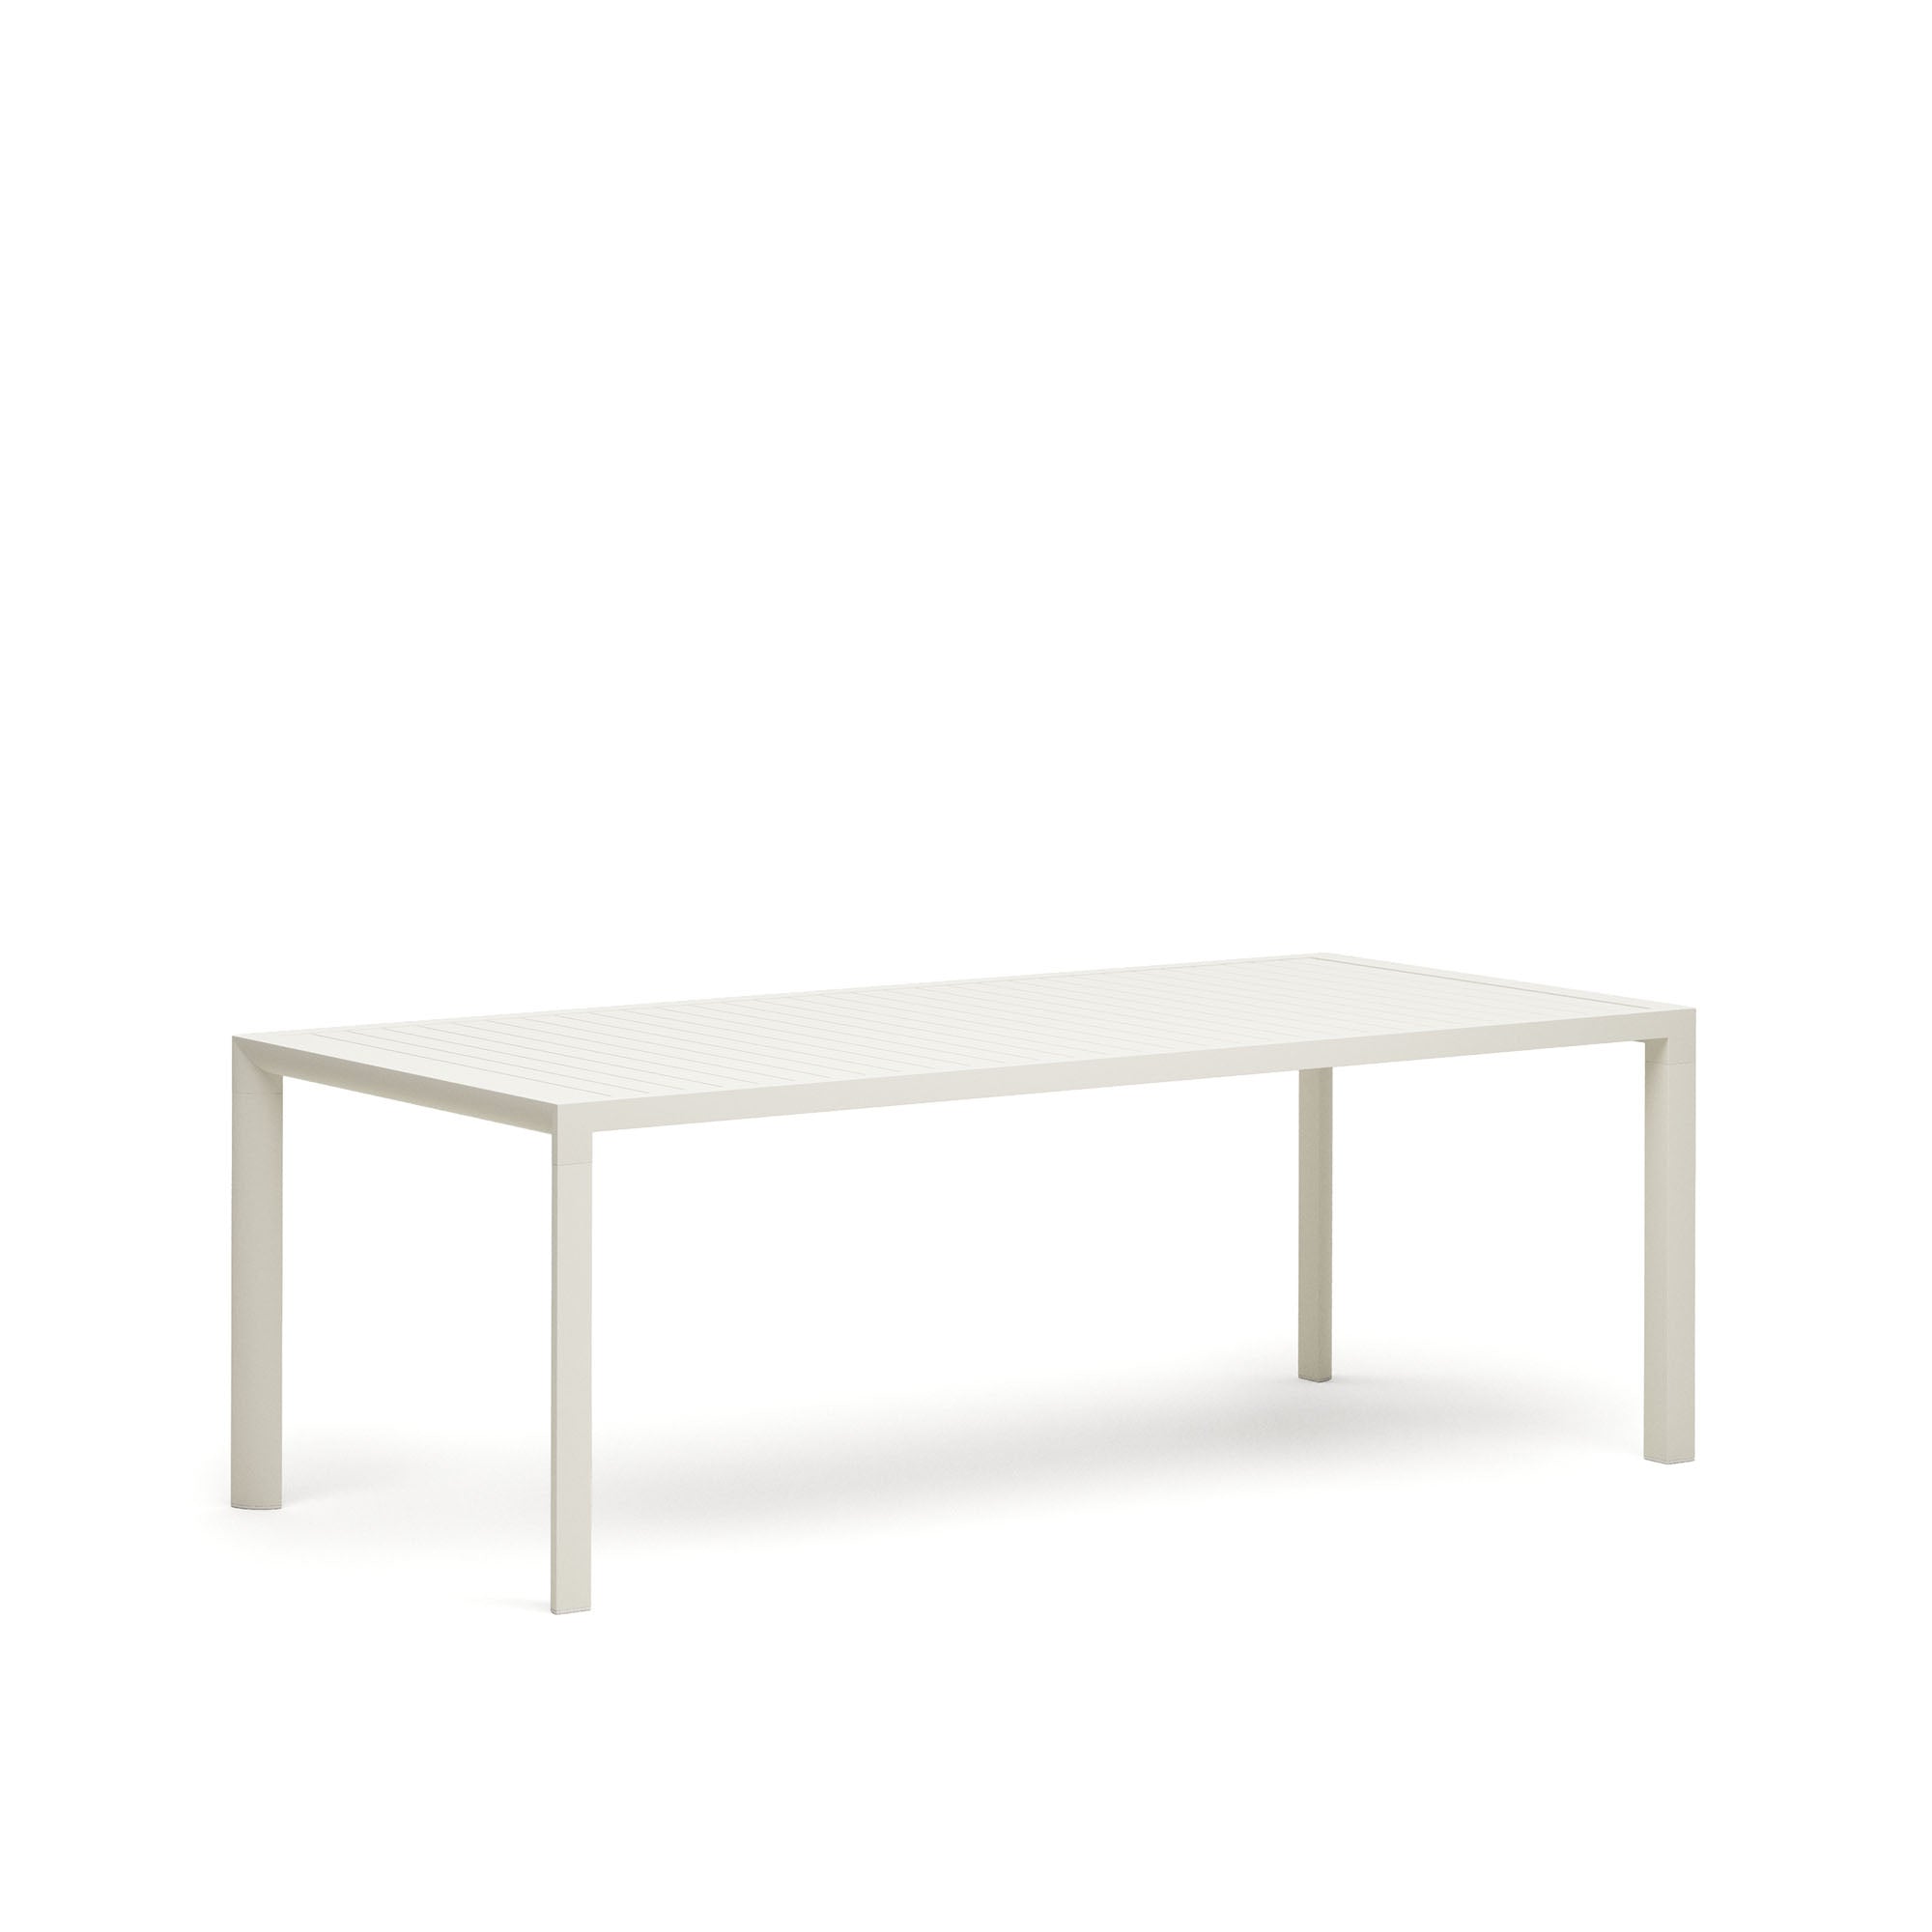 Culip alumínium kültéri asztal, porszórt fehér kivitelben, 220 x 100 cm